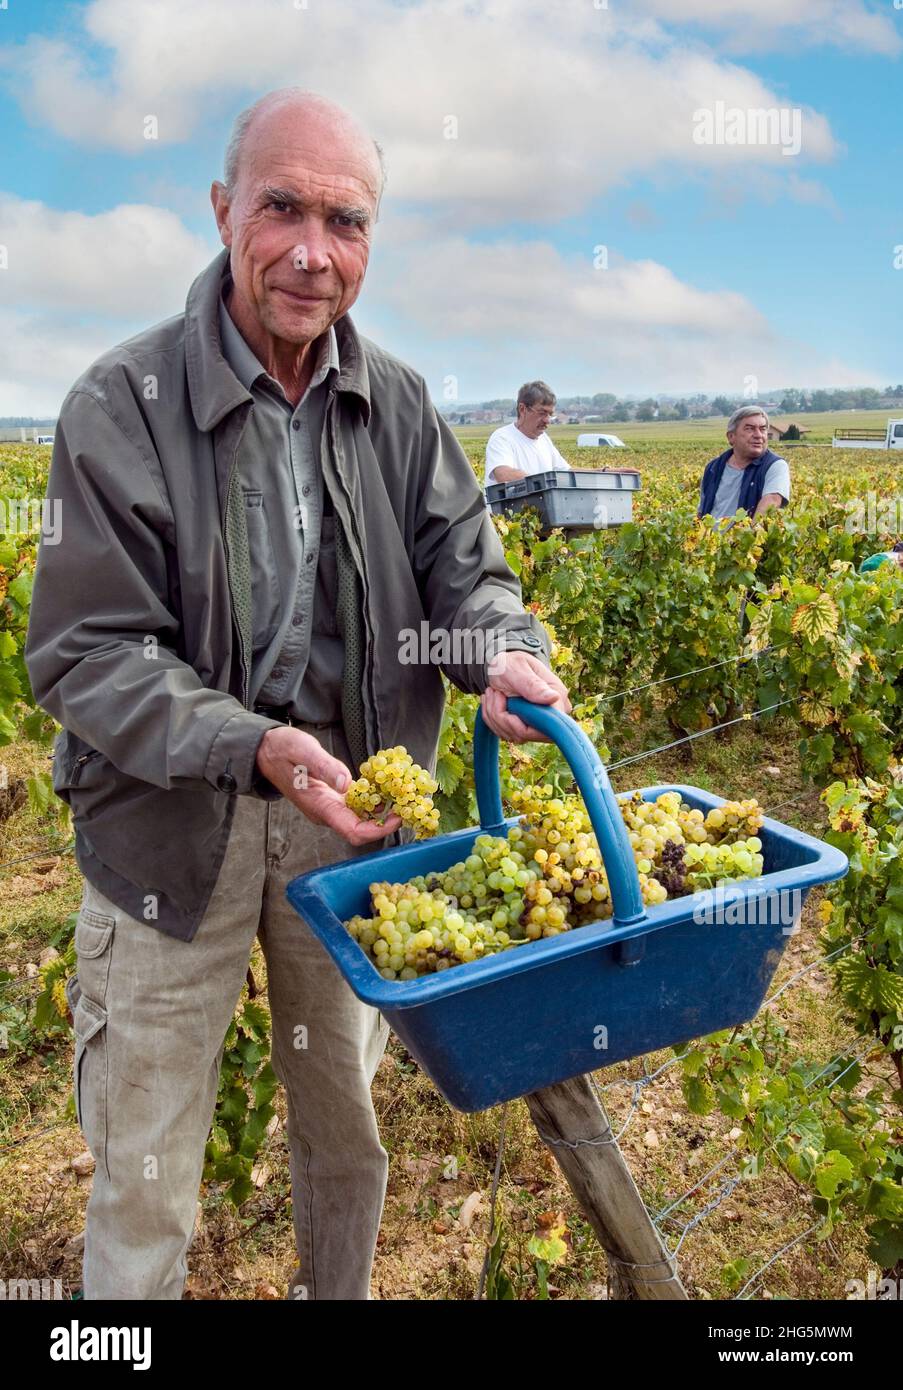 Aubert de Villaine DRC, reconocido enólogo, con un pannier de uvas cosechadas Grand Cru Chardonnay en la parcela Domaine de la Romanee-Conti de Le Montrachet viñedo, Chassagne-Montrachet, Cote d'Or, Francia Foto de stock